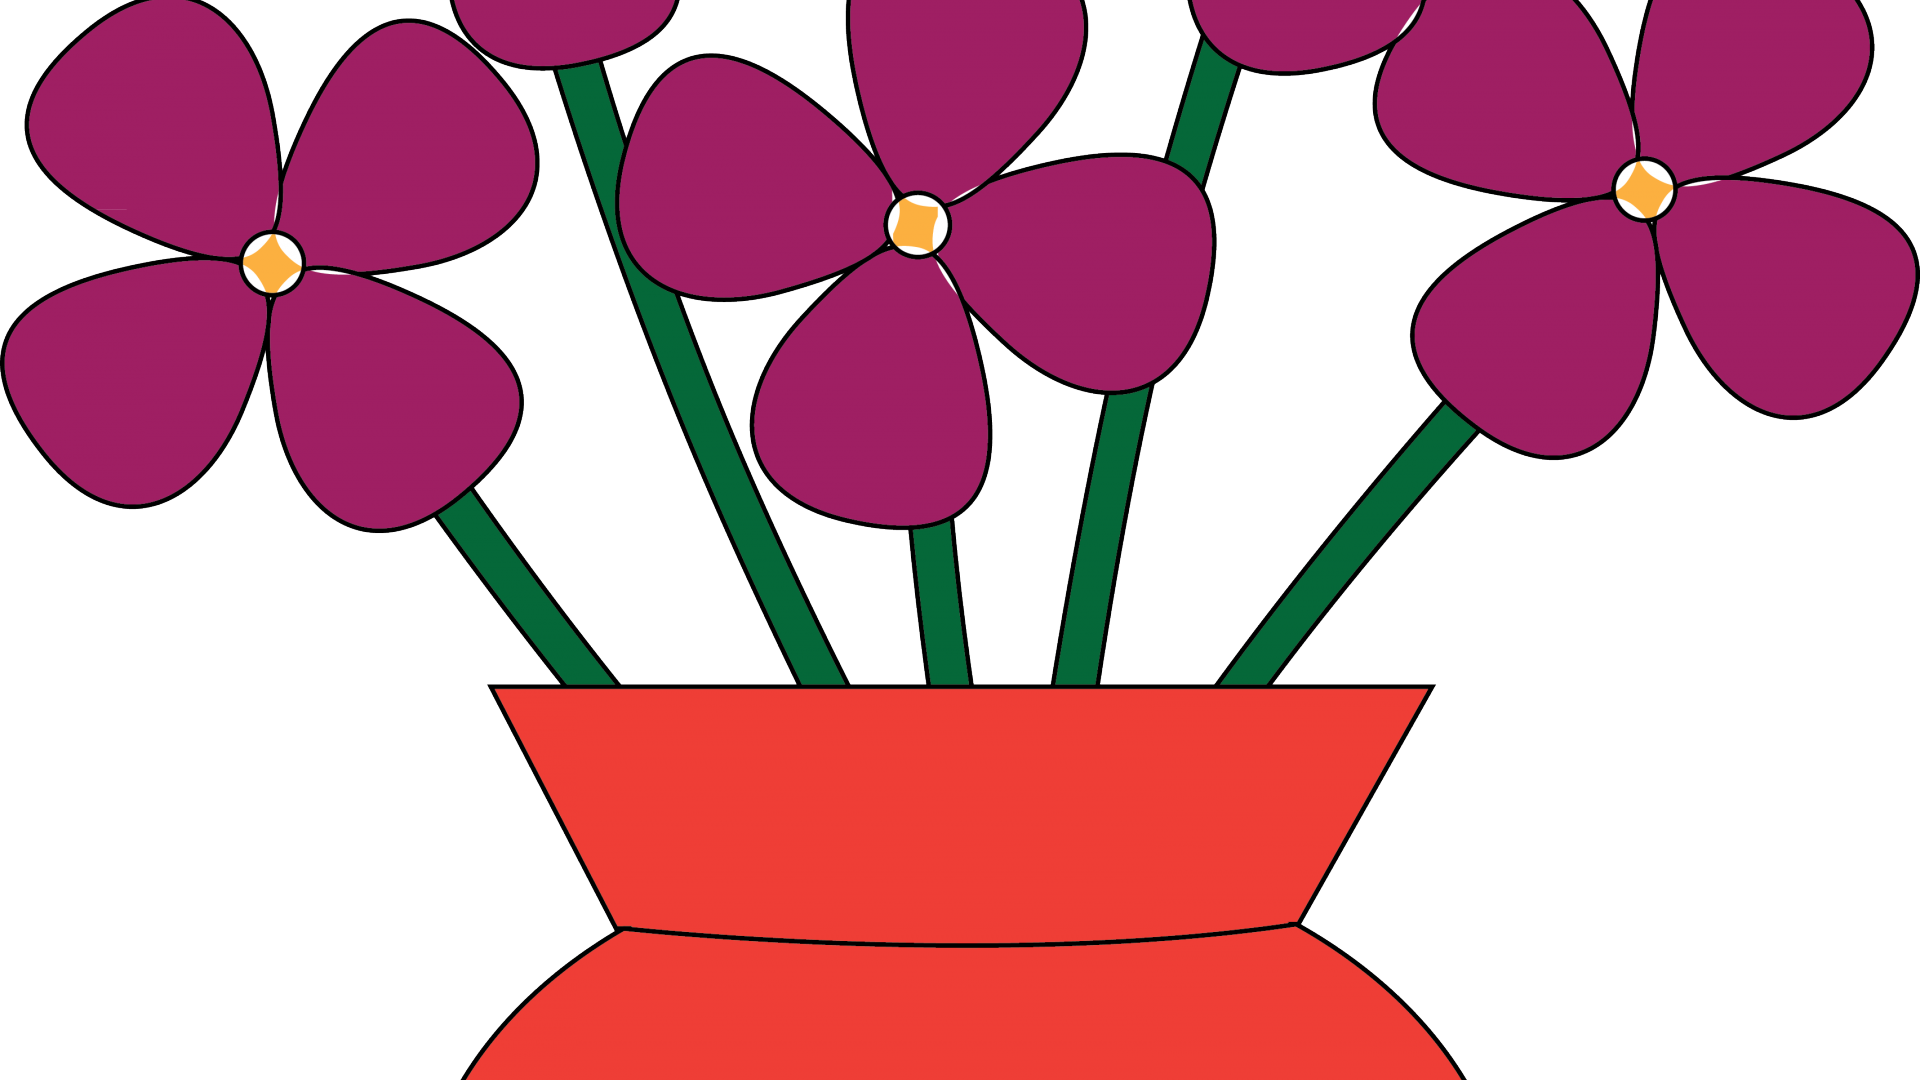 Vase Clipart 2 Flower - Flower In A Vase Clipart (1920x1080)